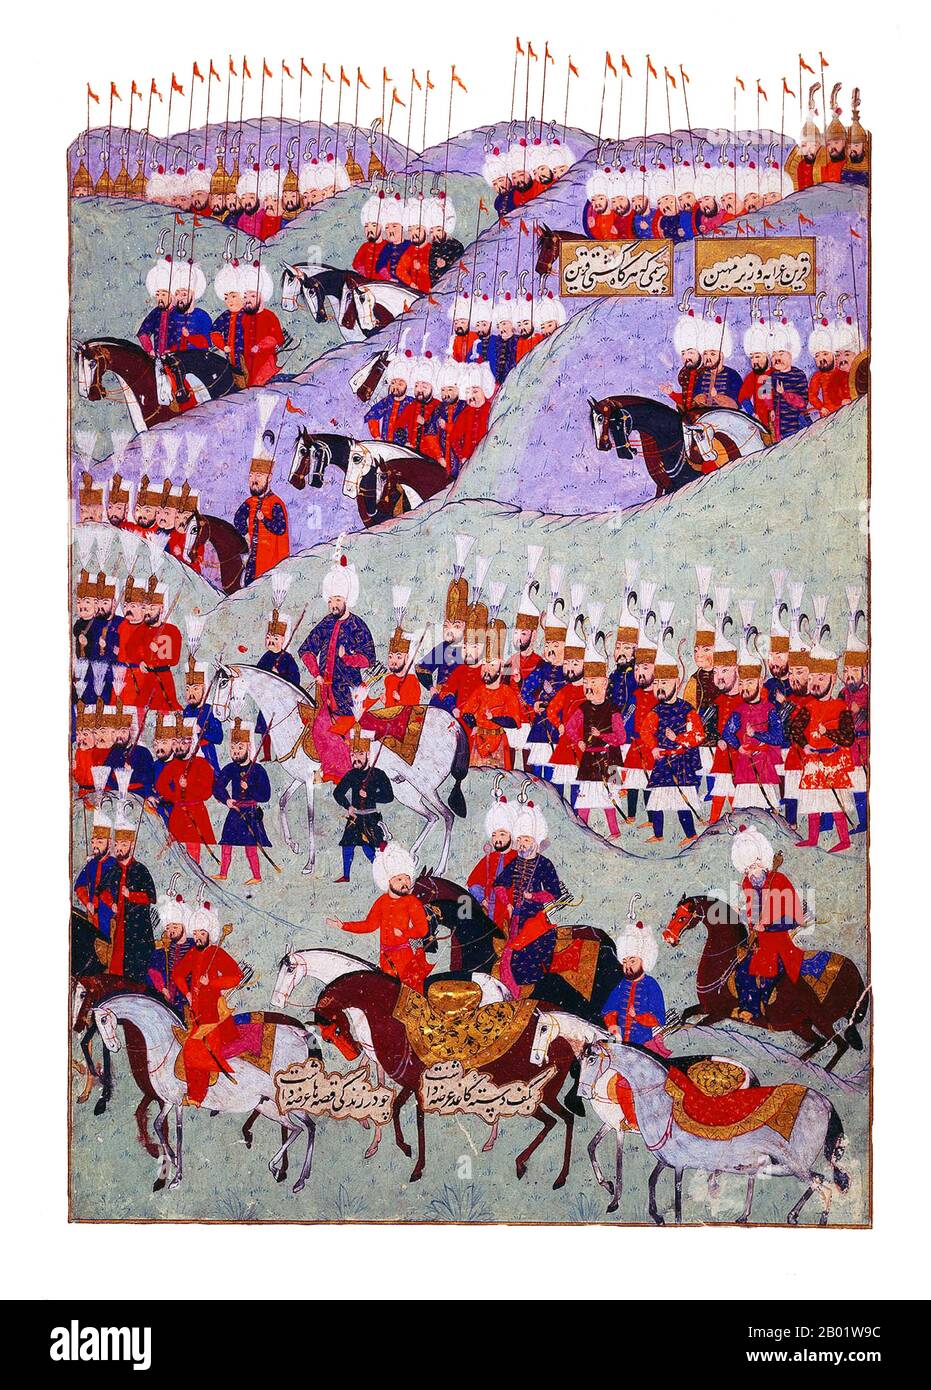 Turquie : funérailles du sultan Suleyman le magnifique (6 novembre 1494 - 6 septembre 1566). Tableau miniature ottoman (panneau droit) de Matrakci Nasuh, 1579. Sultan Suleyman/Suleiman I (R. 1520-1566), également connu sous les noms de Suleyman le magnifique et Suleyman le législateur, était le 10e et le plus long sultan régnant de l'empire ottoman. Il mena personnellement ses armées à conquérir la Transylvanie, la mer Caspienne, une grande partie du moyen-Orient et du Maghreb. Suleyman introduit des réformes radicales dans la législation turque, l'éducation, la fiscalité et le droit pénal, et est très respecté en tant que poète et orfèvre. Banque D'Images